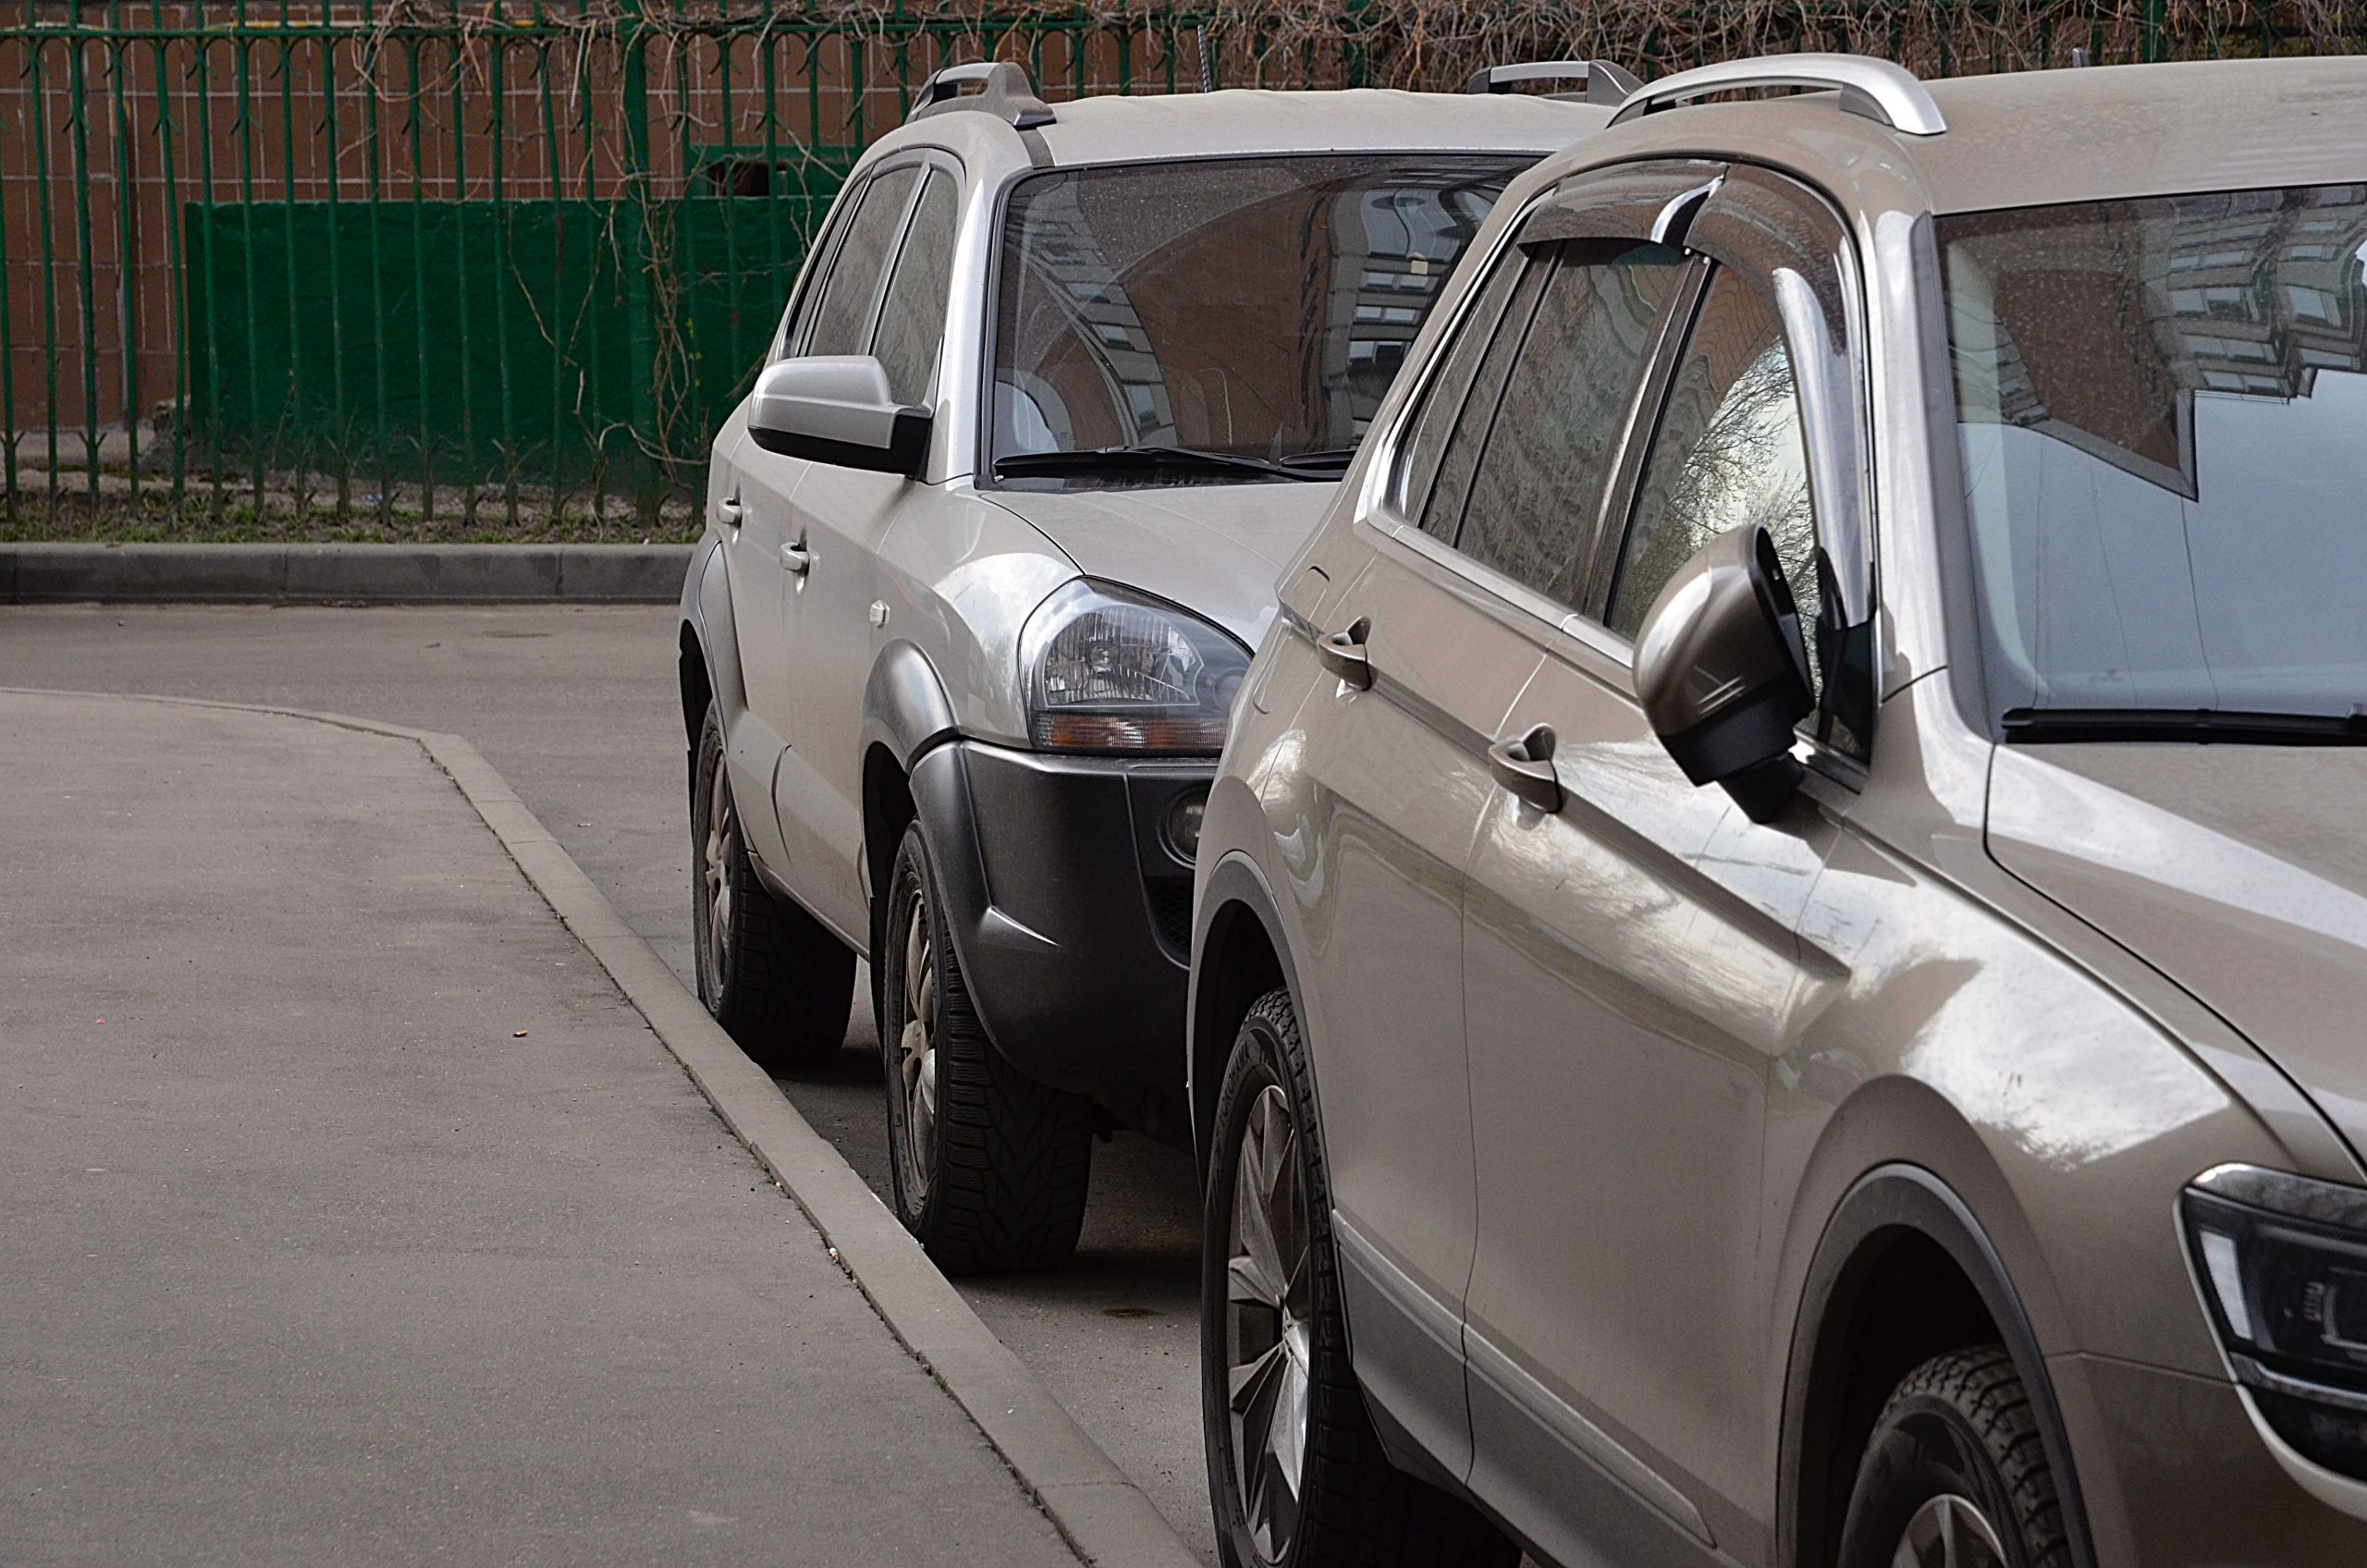 Парковки и капитальный ремонт: Сотрудники районной управы Чертанова Северного предоставили информацию о благоустройстве